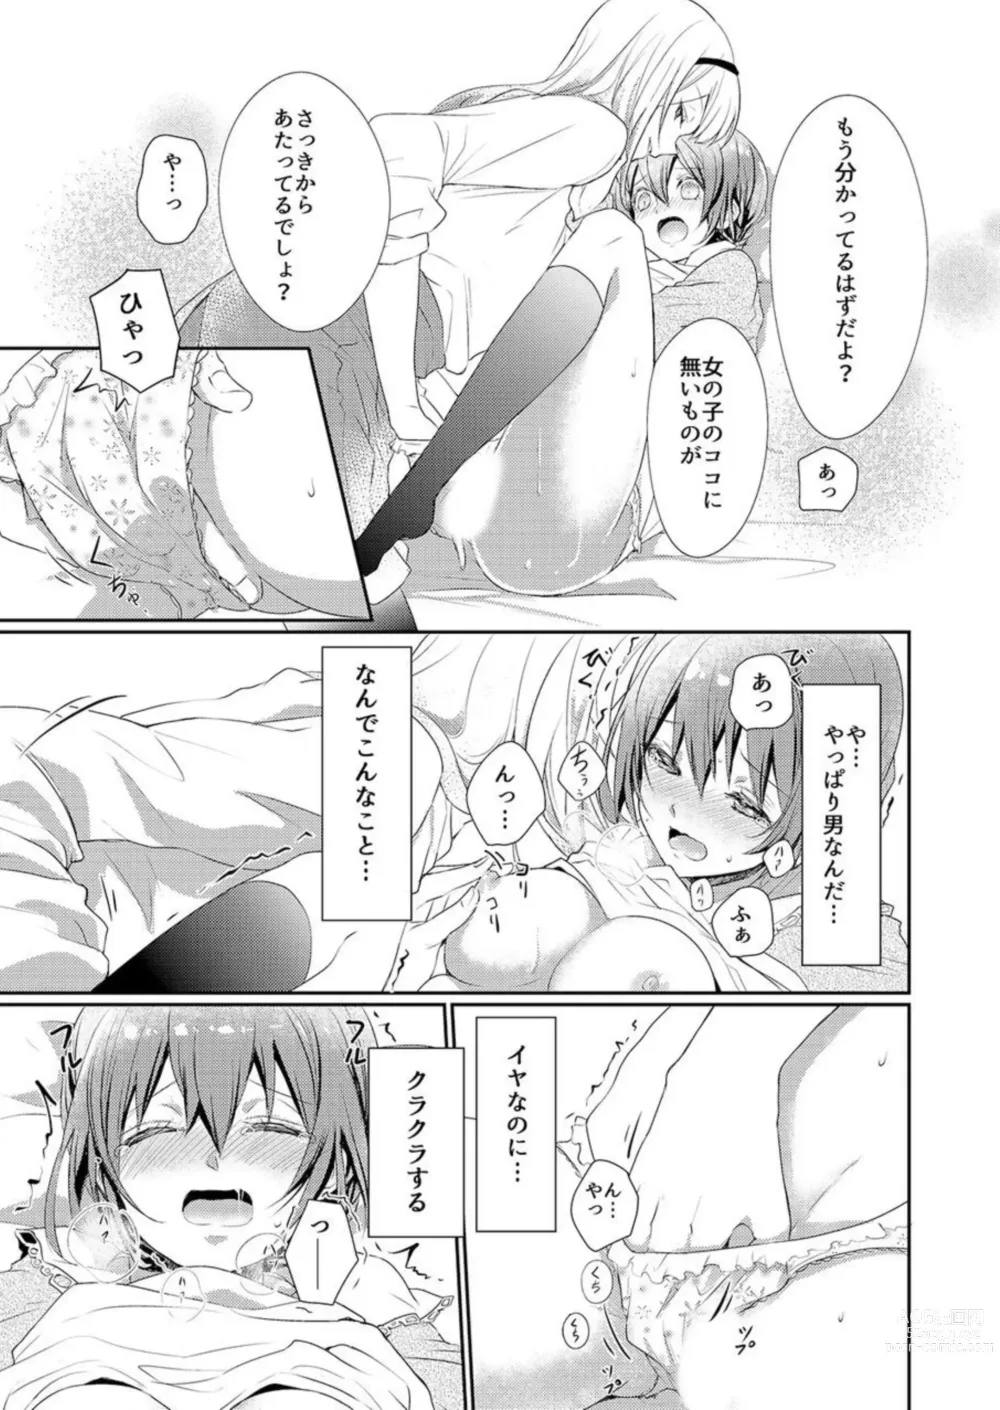 Page 13 of manga Skirt no Naka wa Kedamono Deshita 1